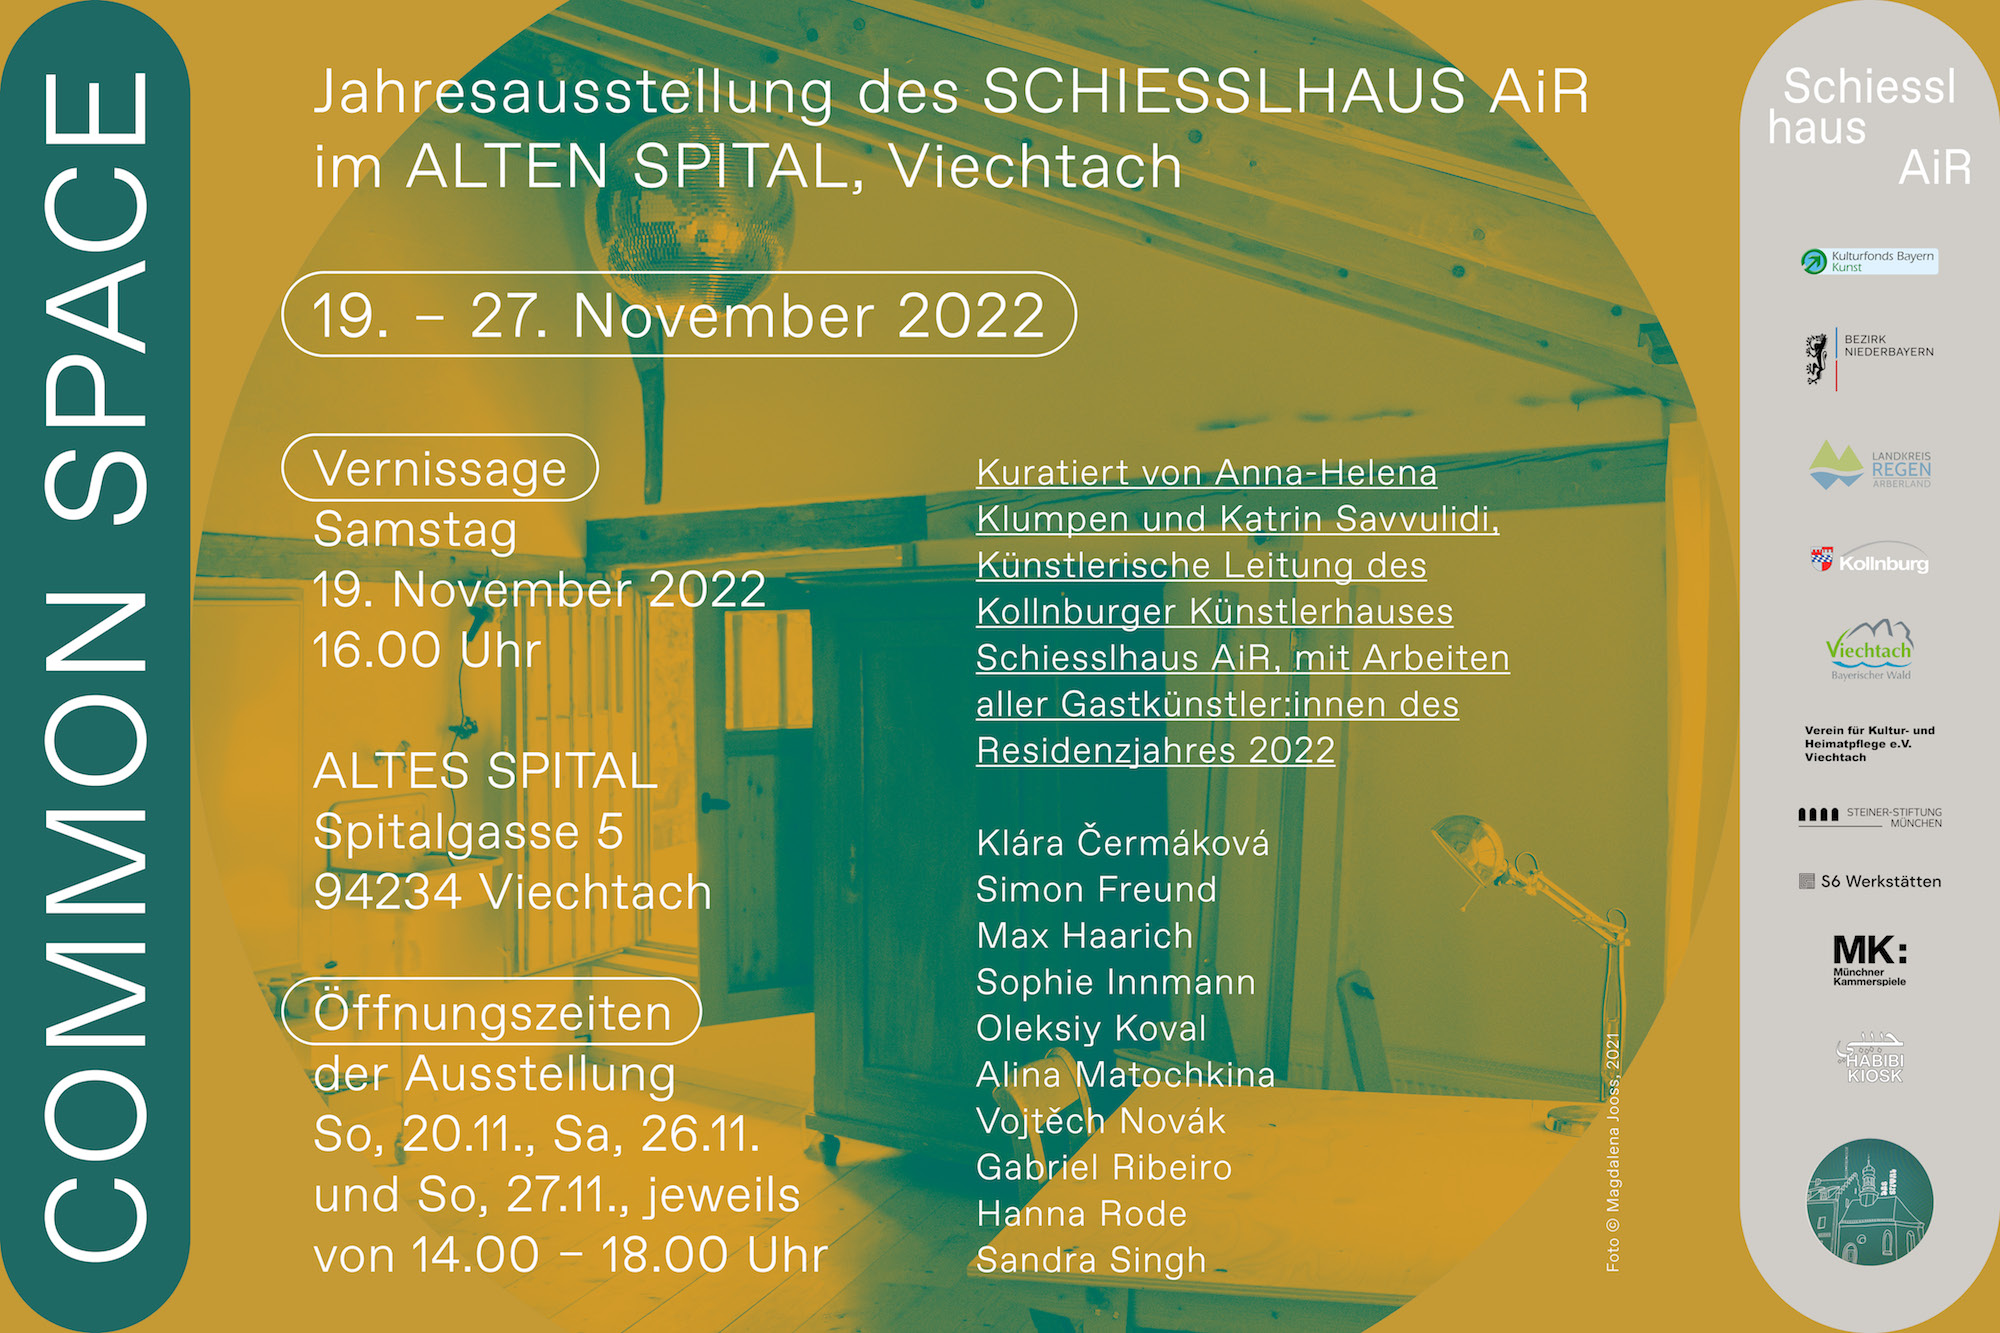 SCHIESSLHAUS-AiR_Jahresausstellung_Website_DE